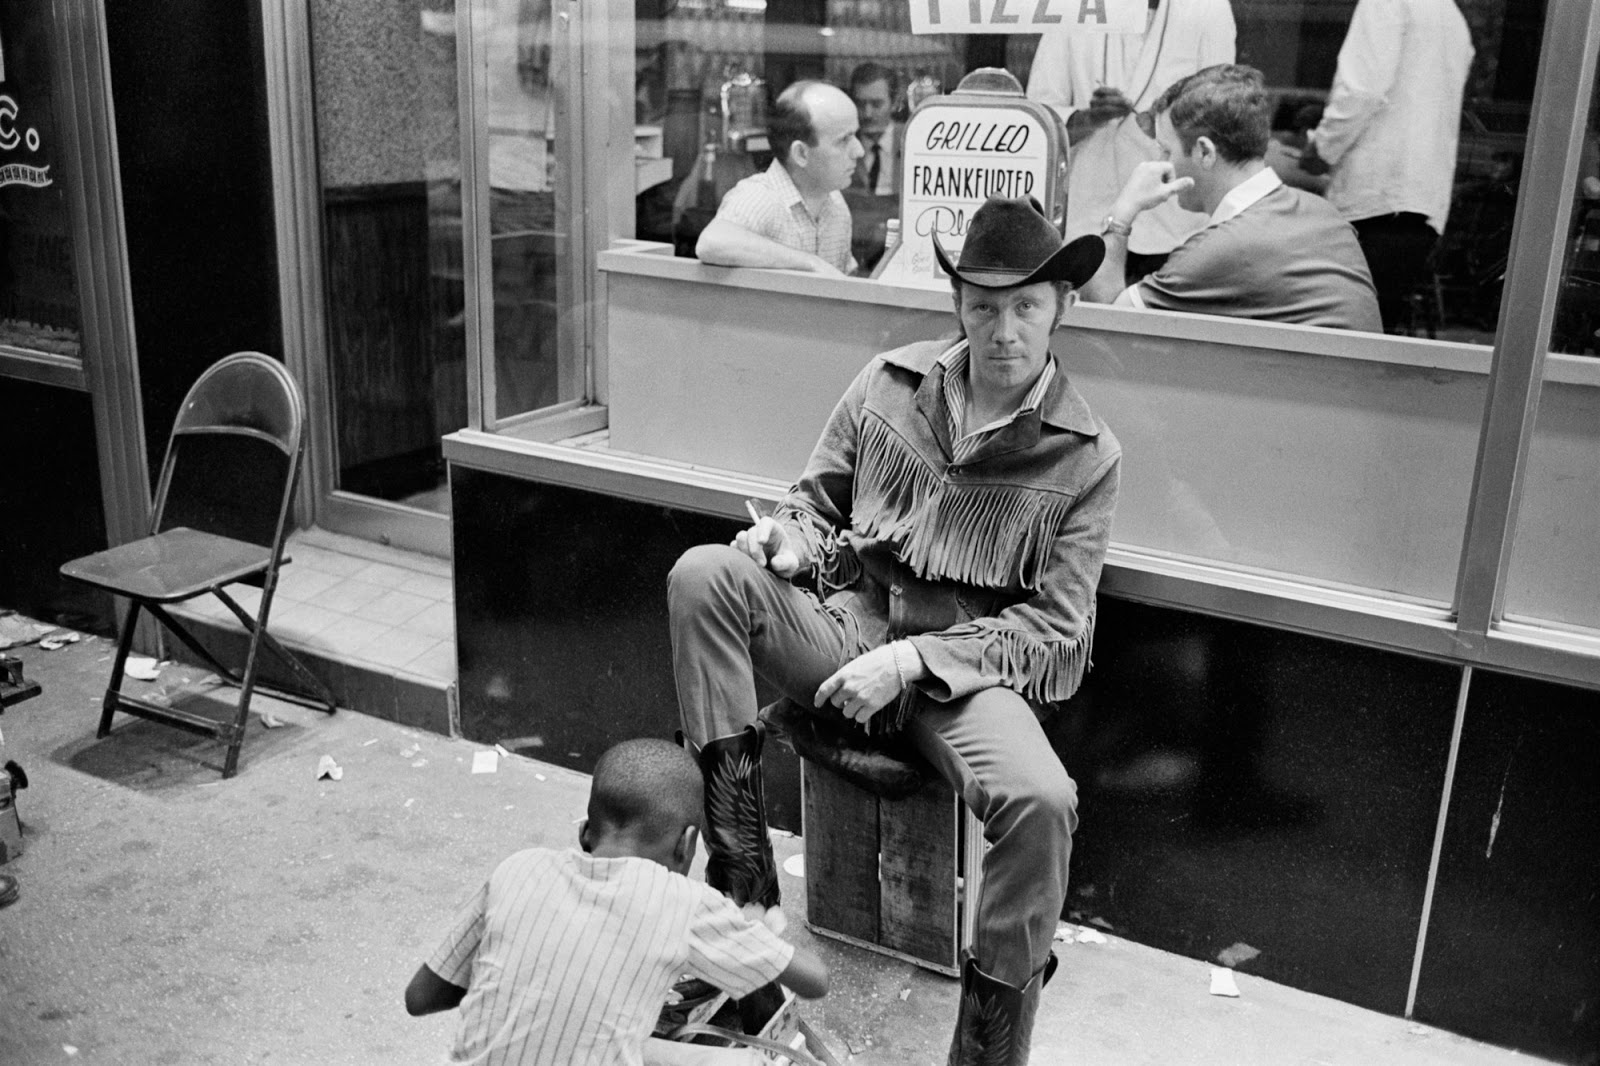 нью-йорк фото 70-х отвратительные мужики disgusting men